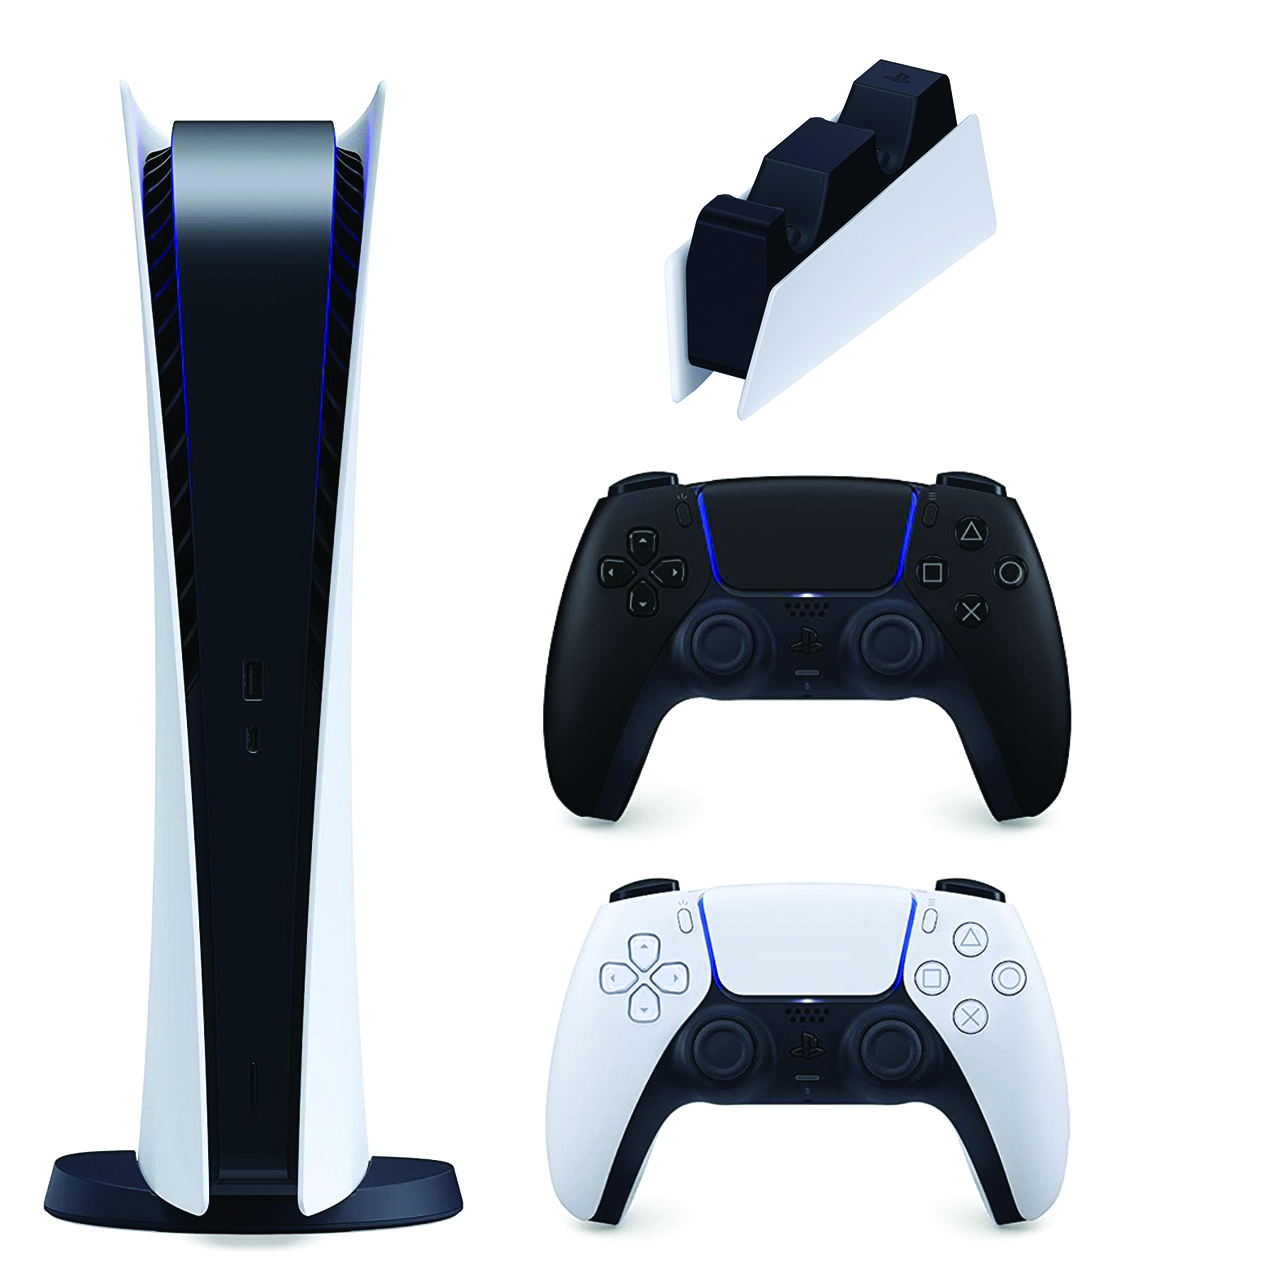 مجموعه کنسول بازی سونی مدل PlayStation 5 Digital ظرفیت 825 گیگابایت به همراه دسته اضافی و پایه شارژر